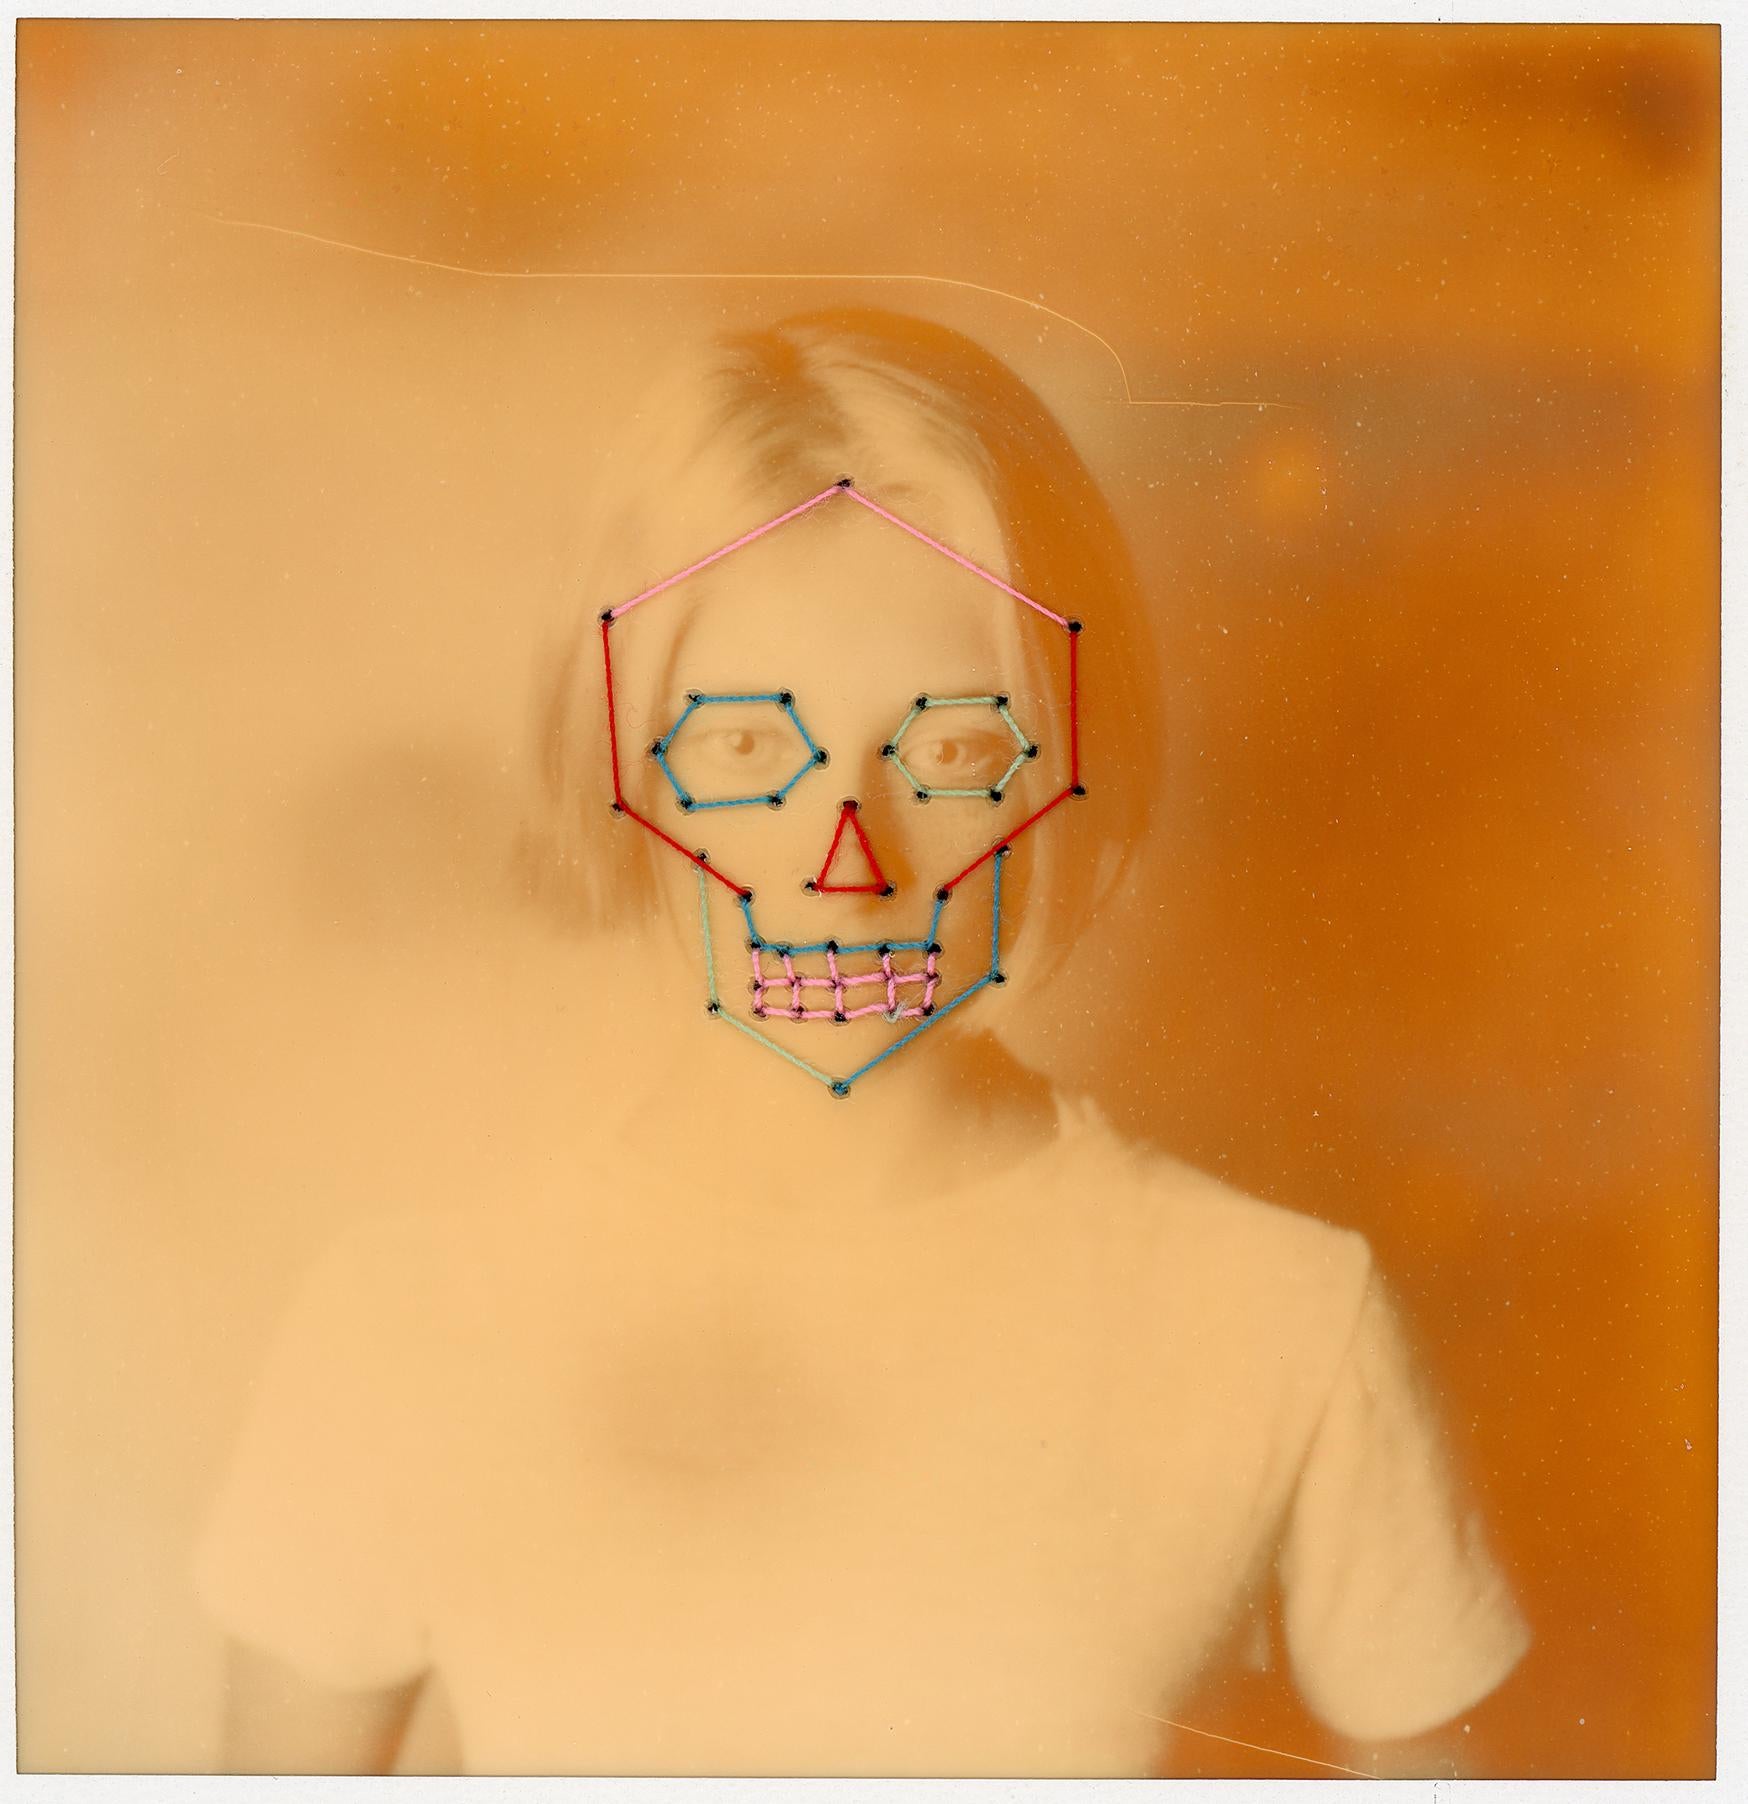 Portrait Photograph Urizen Freaza - Tempus Fugit - Contemporain, Conceptuel, Polaroid, 21e siècle, Couleur, Portrait